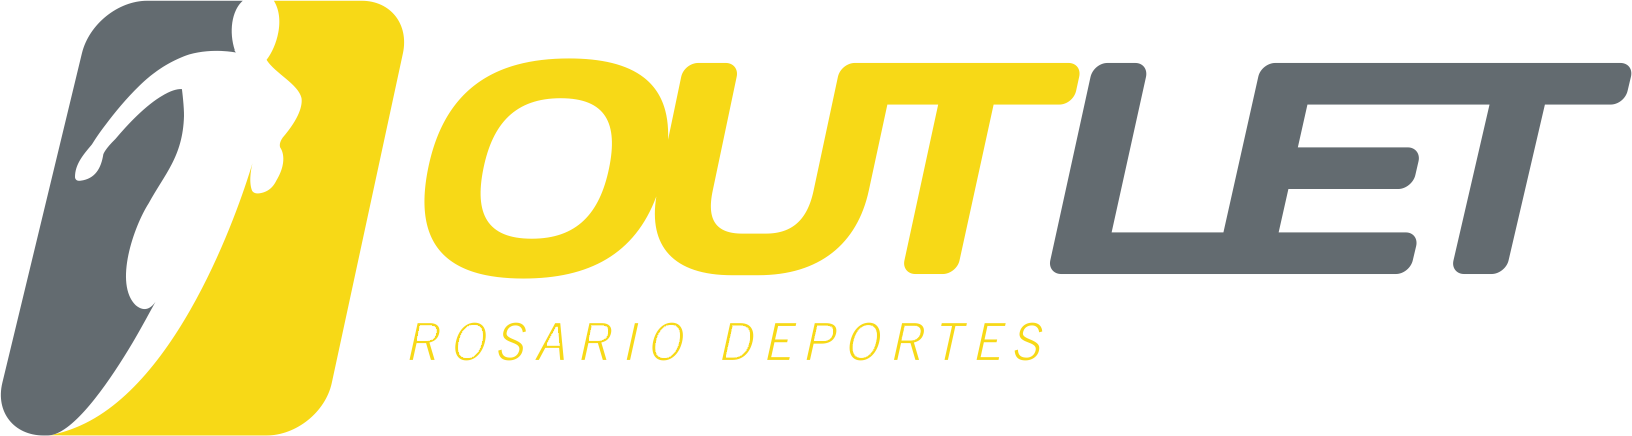 OUTLET_logo